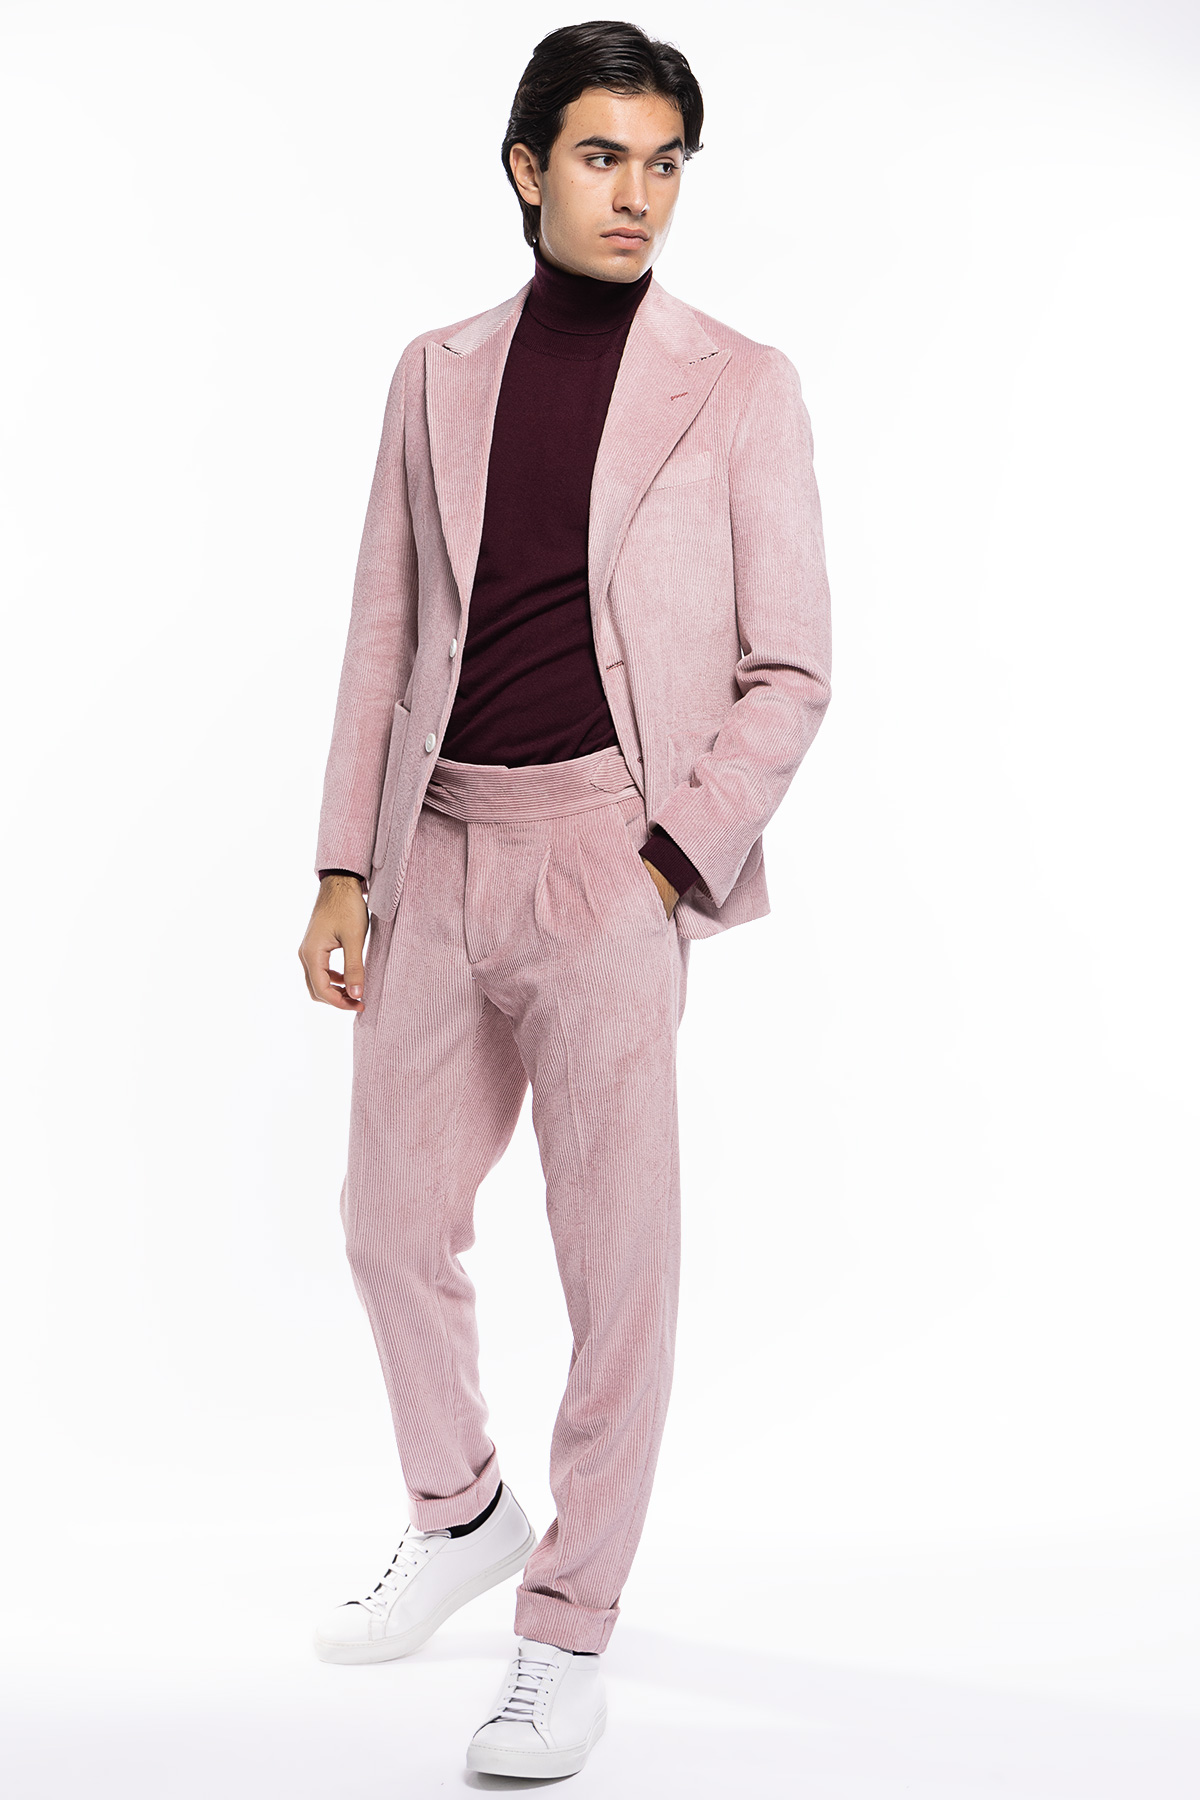 Abito uomo rosa con giacca monopetto in velluto a costine strette e pantalone vita alta cinturino biforcato